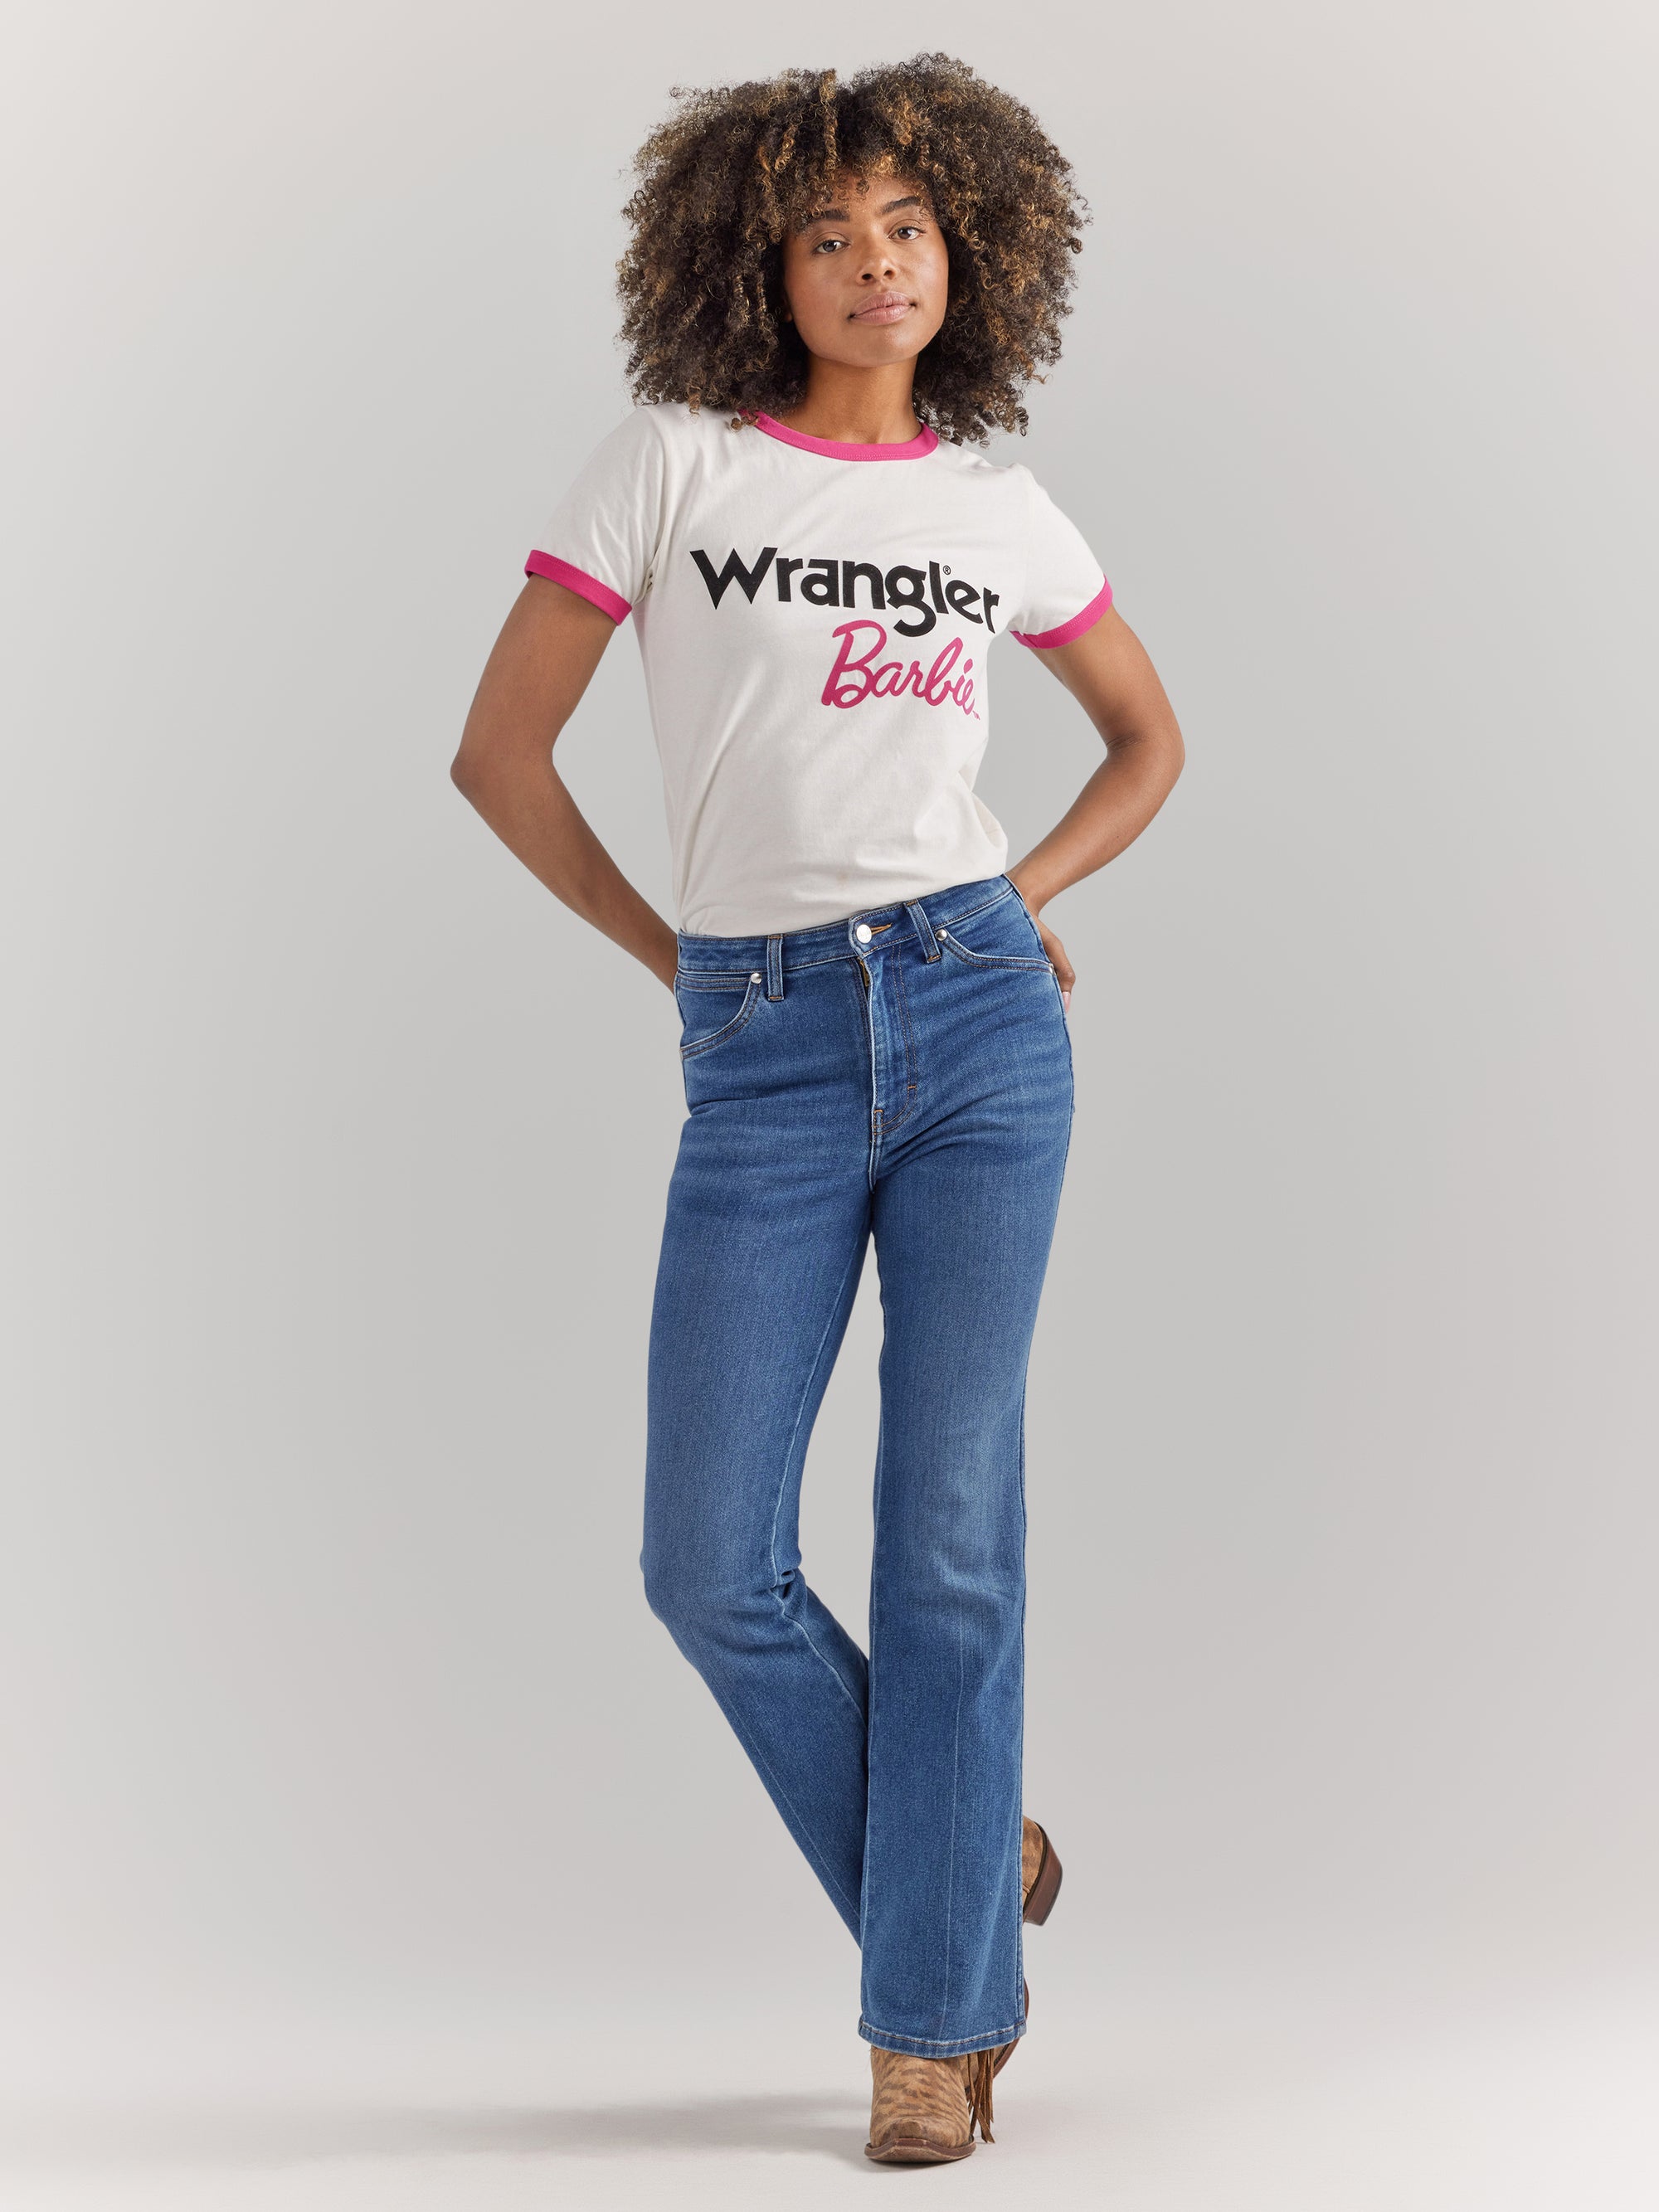 Wrangler X Barbie Women's Logos Slim Ringer Tee In Worn White